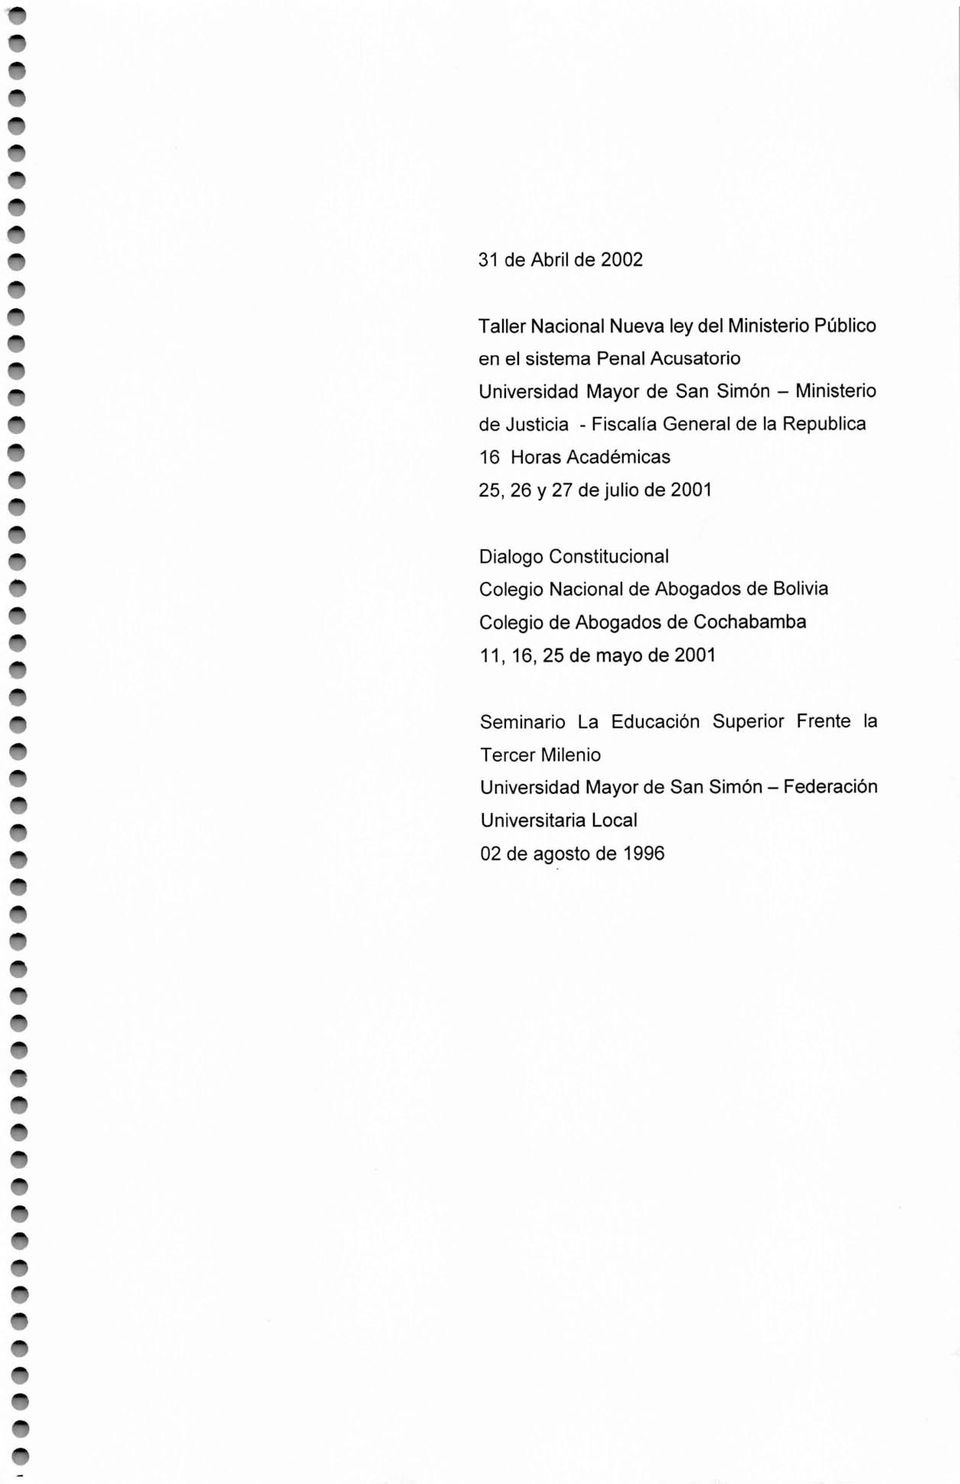 Constitucional Colegio Nacional de Abogados de Bolivia Colegio de Abogados de Cochabamba 11, 16,25 de mayo de 2001 Seminario